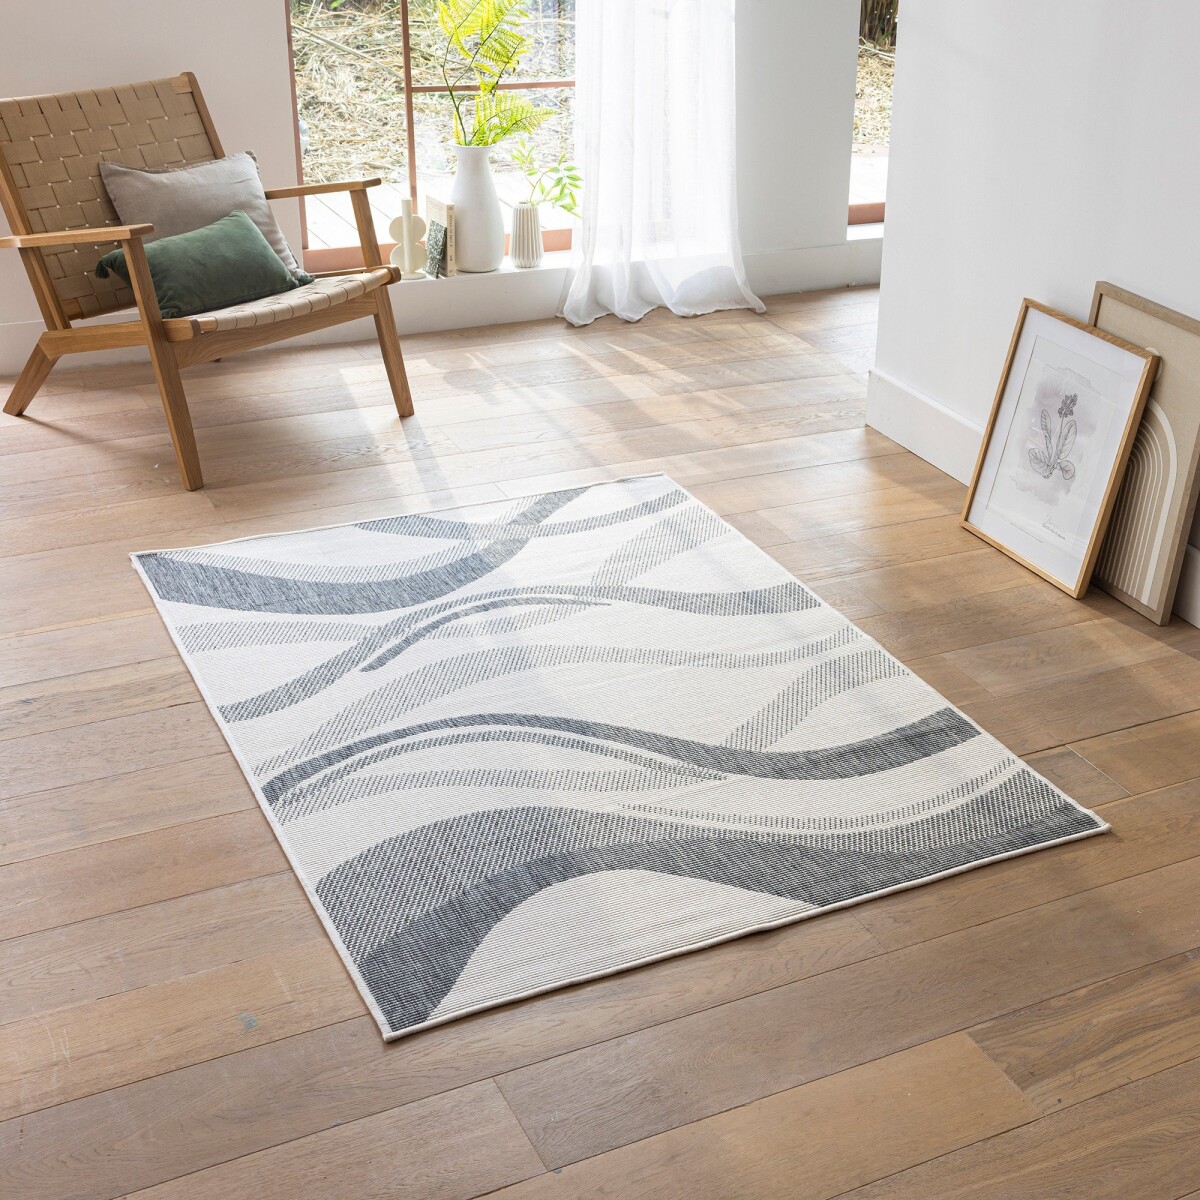 Obdĺžnikový obojstranný koberec do interiéru/exteriéru